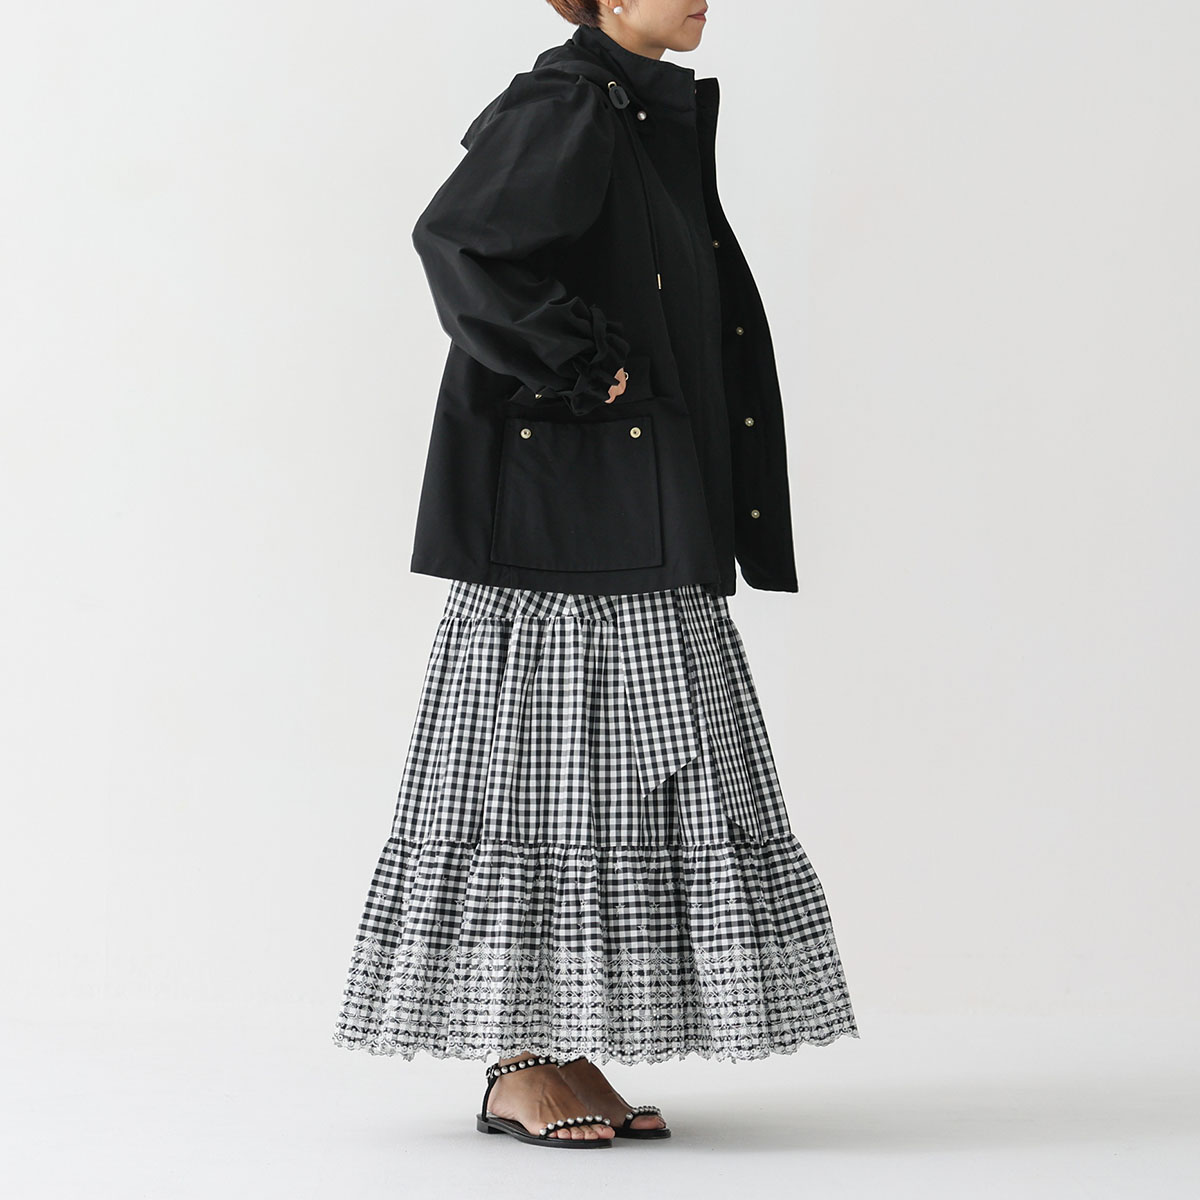 『Stella scallop』 tiered skirt WHITE×BLACK画像